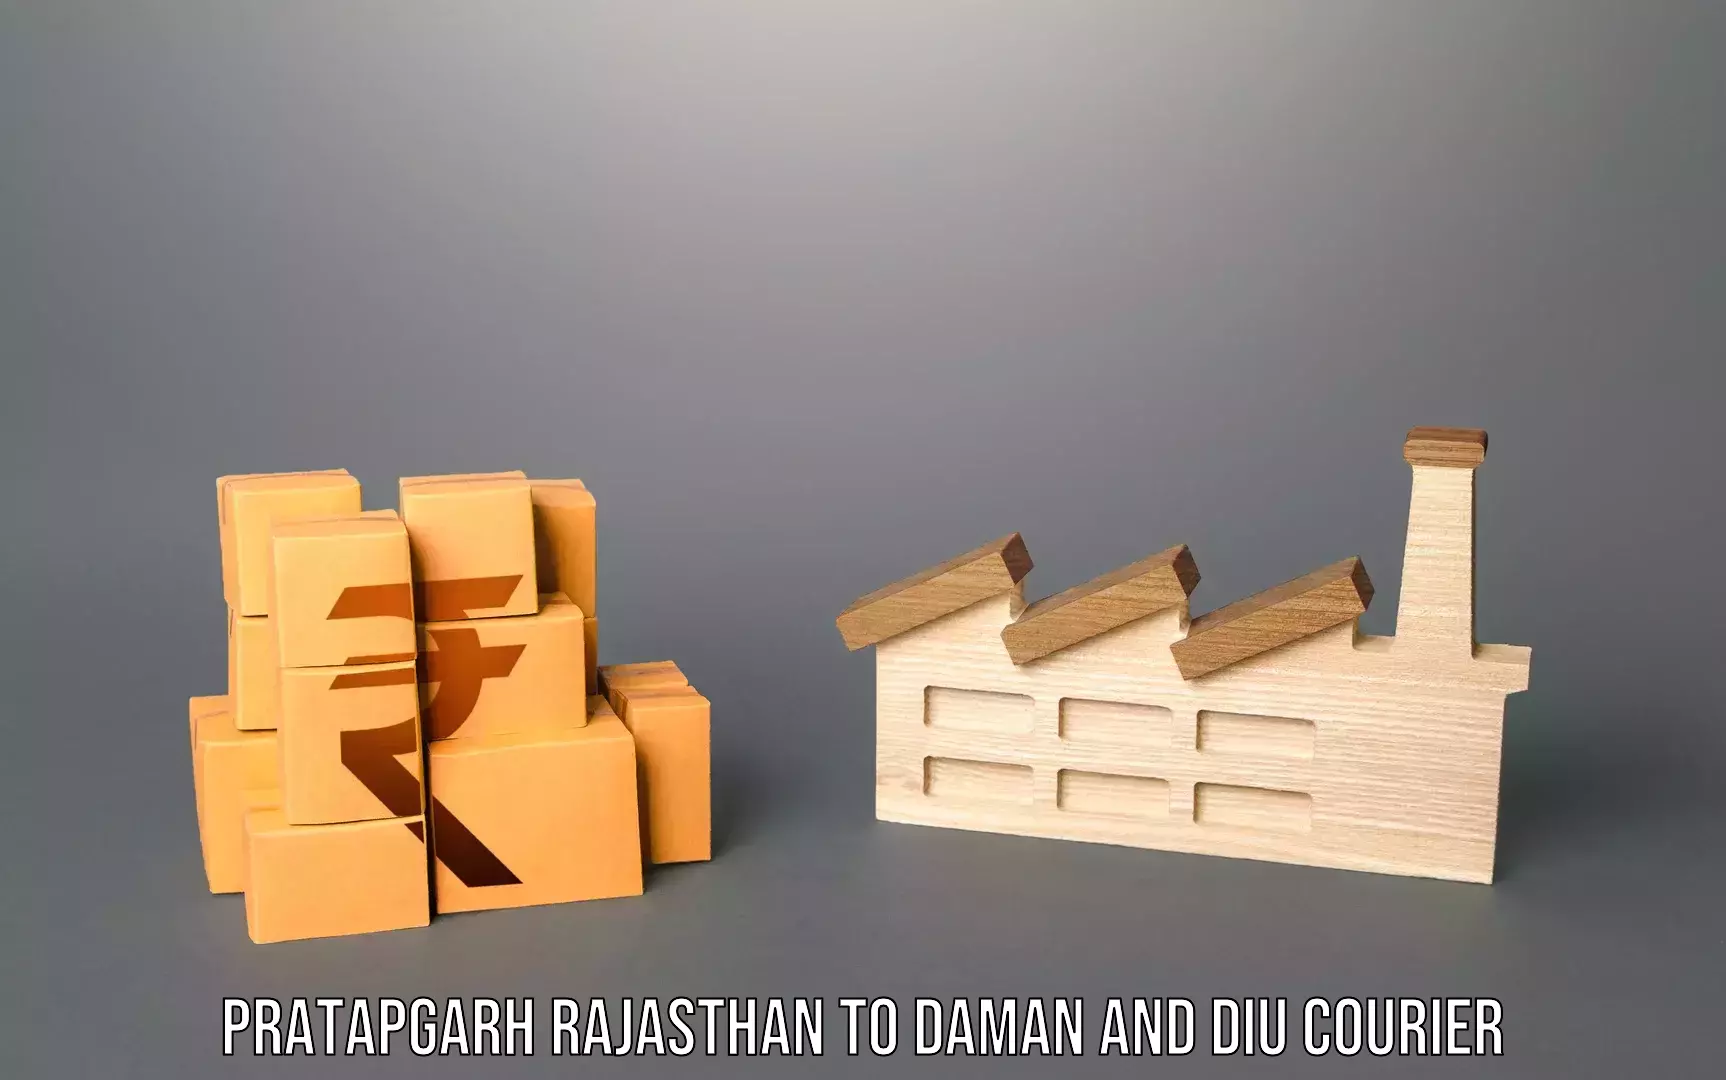 Luggage forwarding service Pratapgarh Rajasthan to Diu